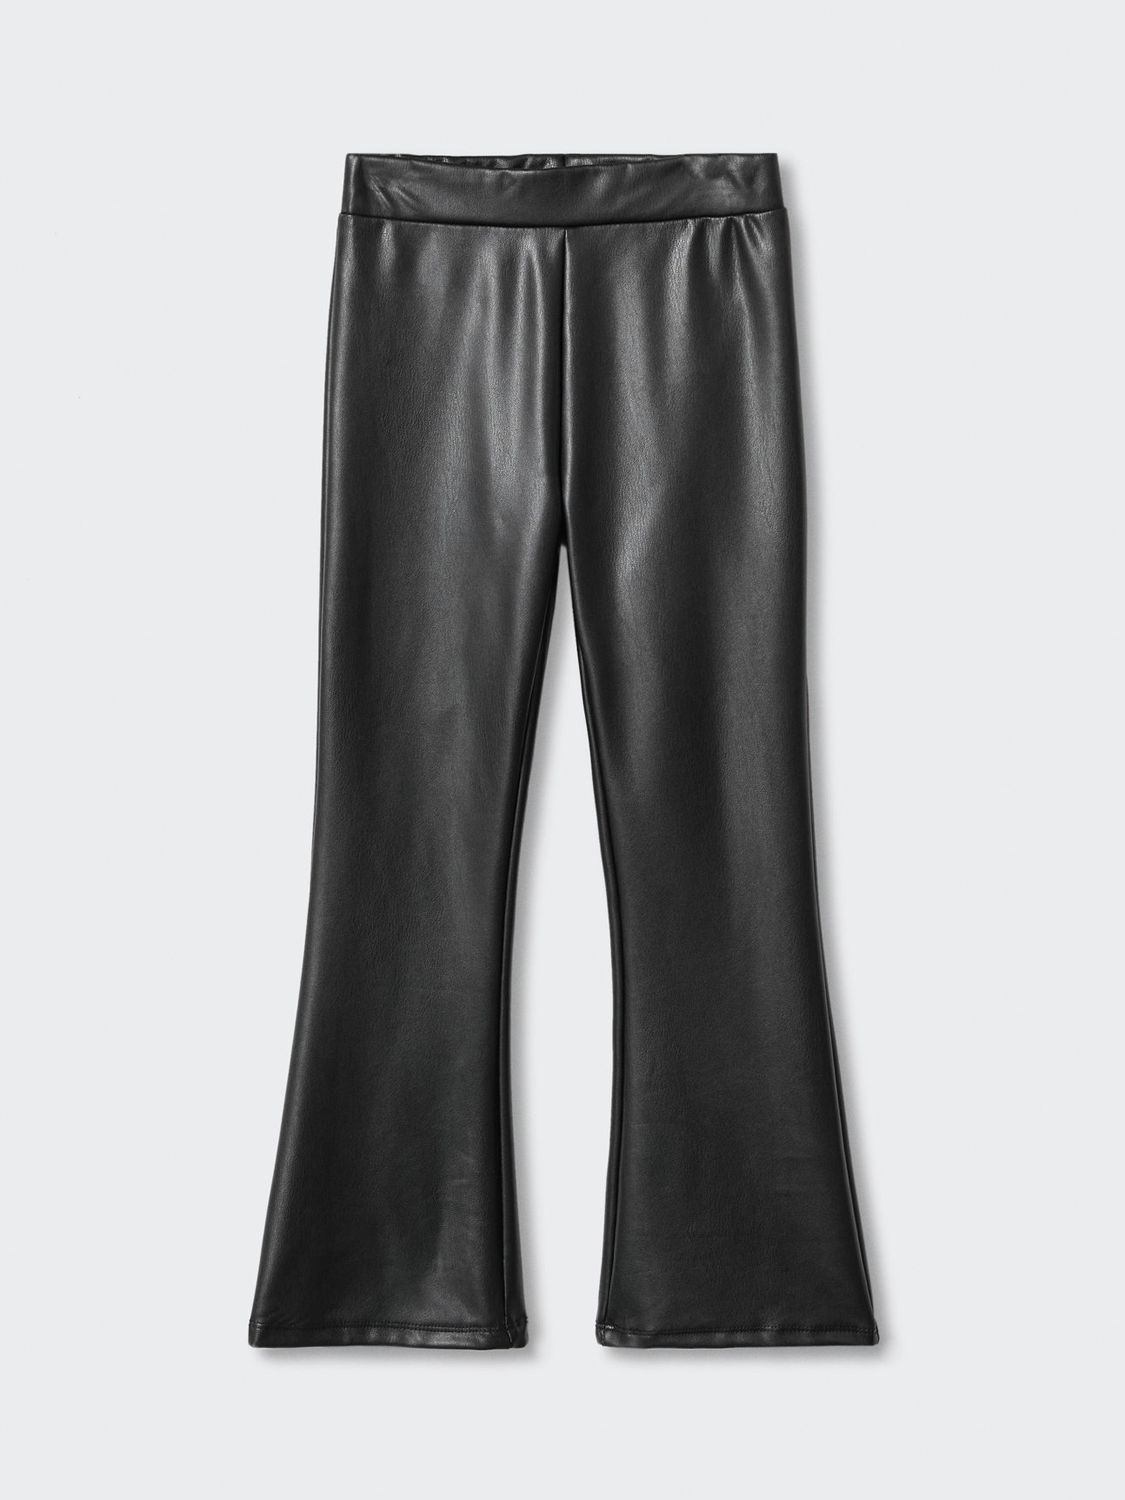 Mango faux leather leggings in black